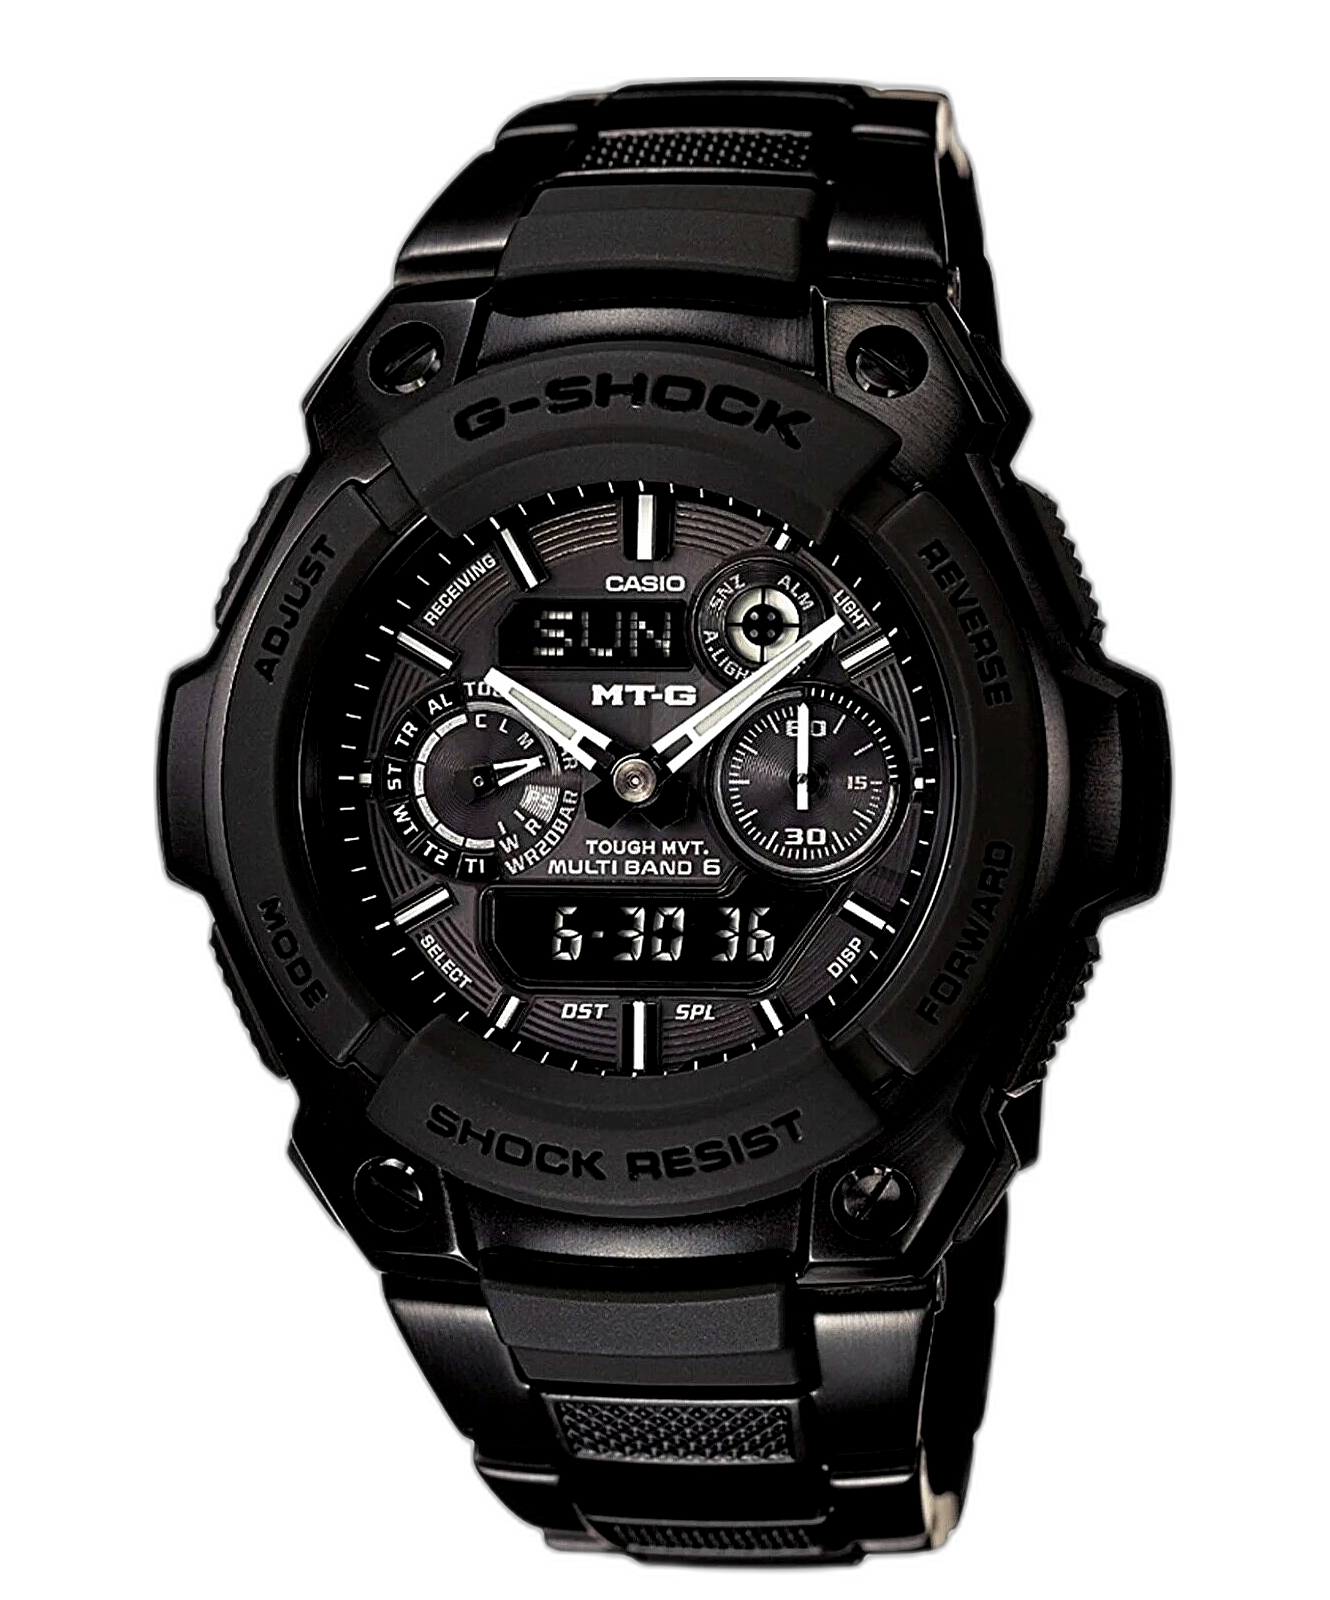 Casio G-Shock MT-G MTG1500 Price